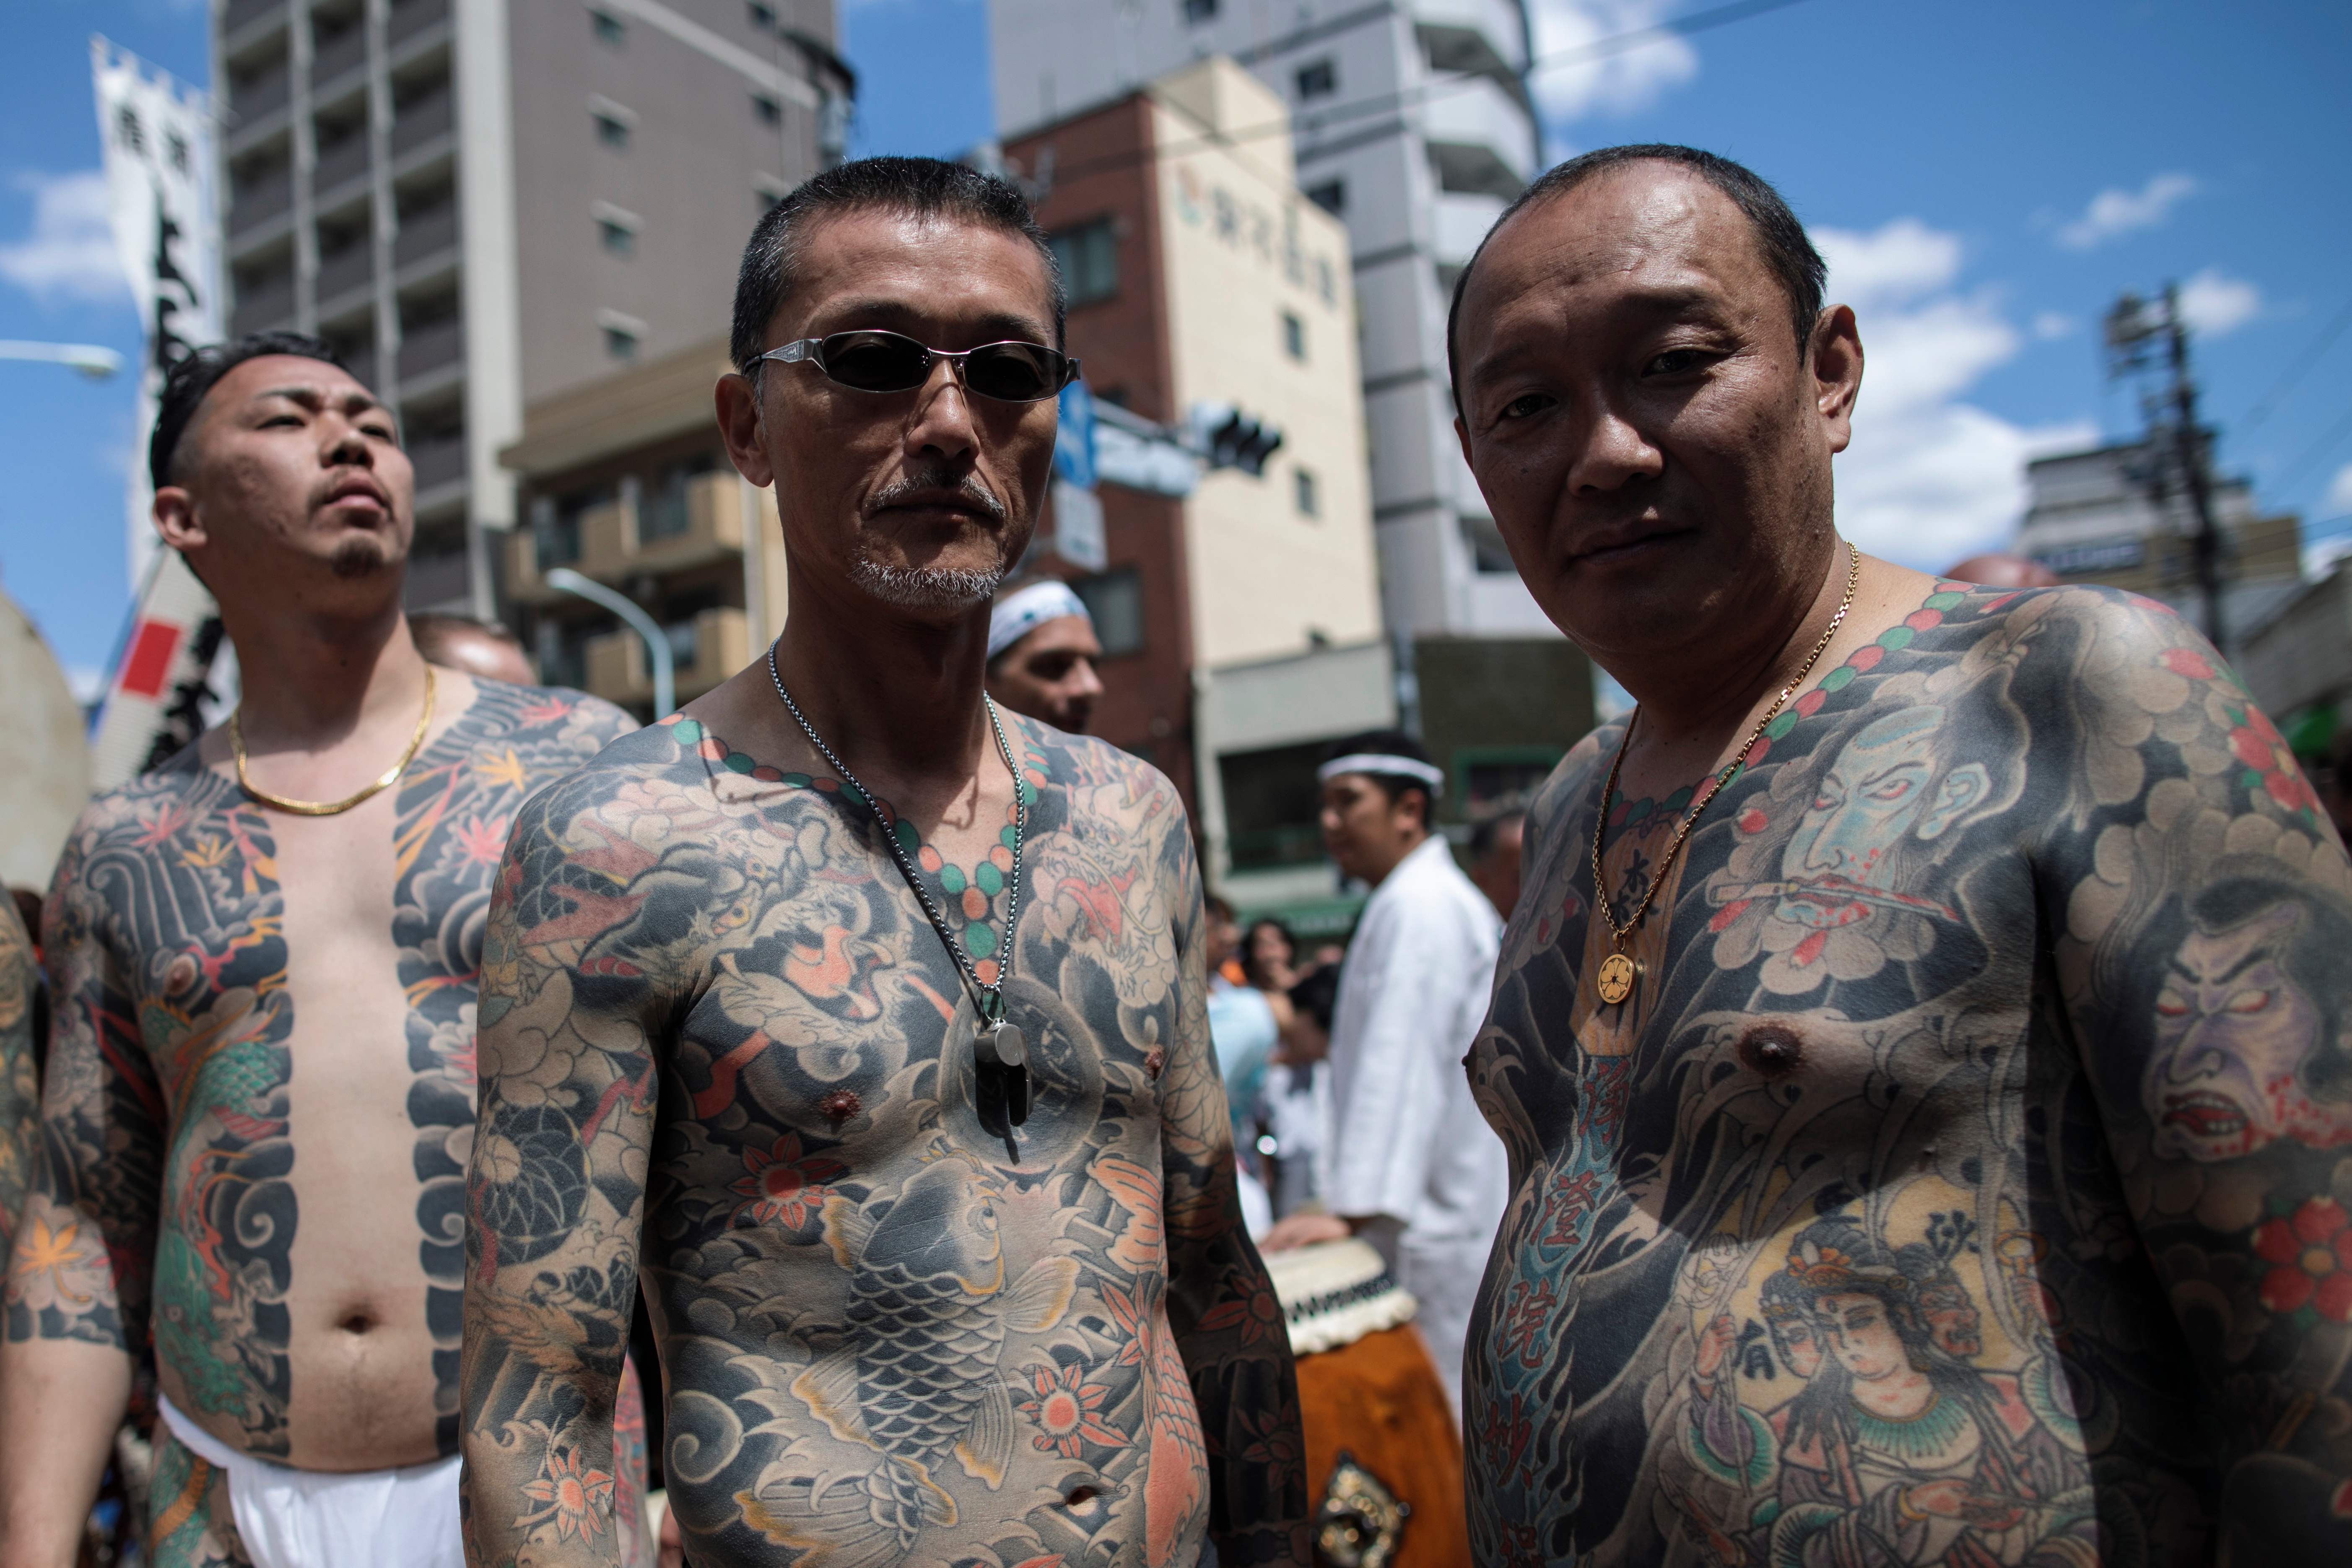 يابانيون يغطون أجسامهم بالوشم خلال احتفالات دينية